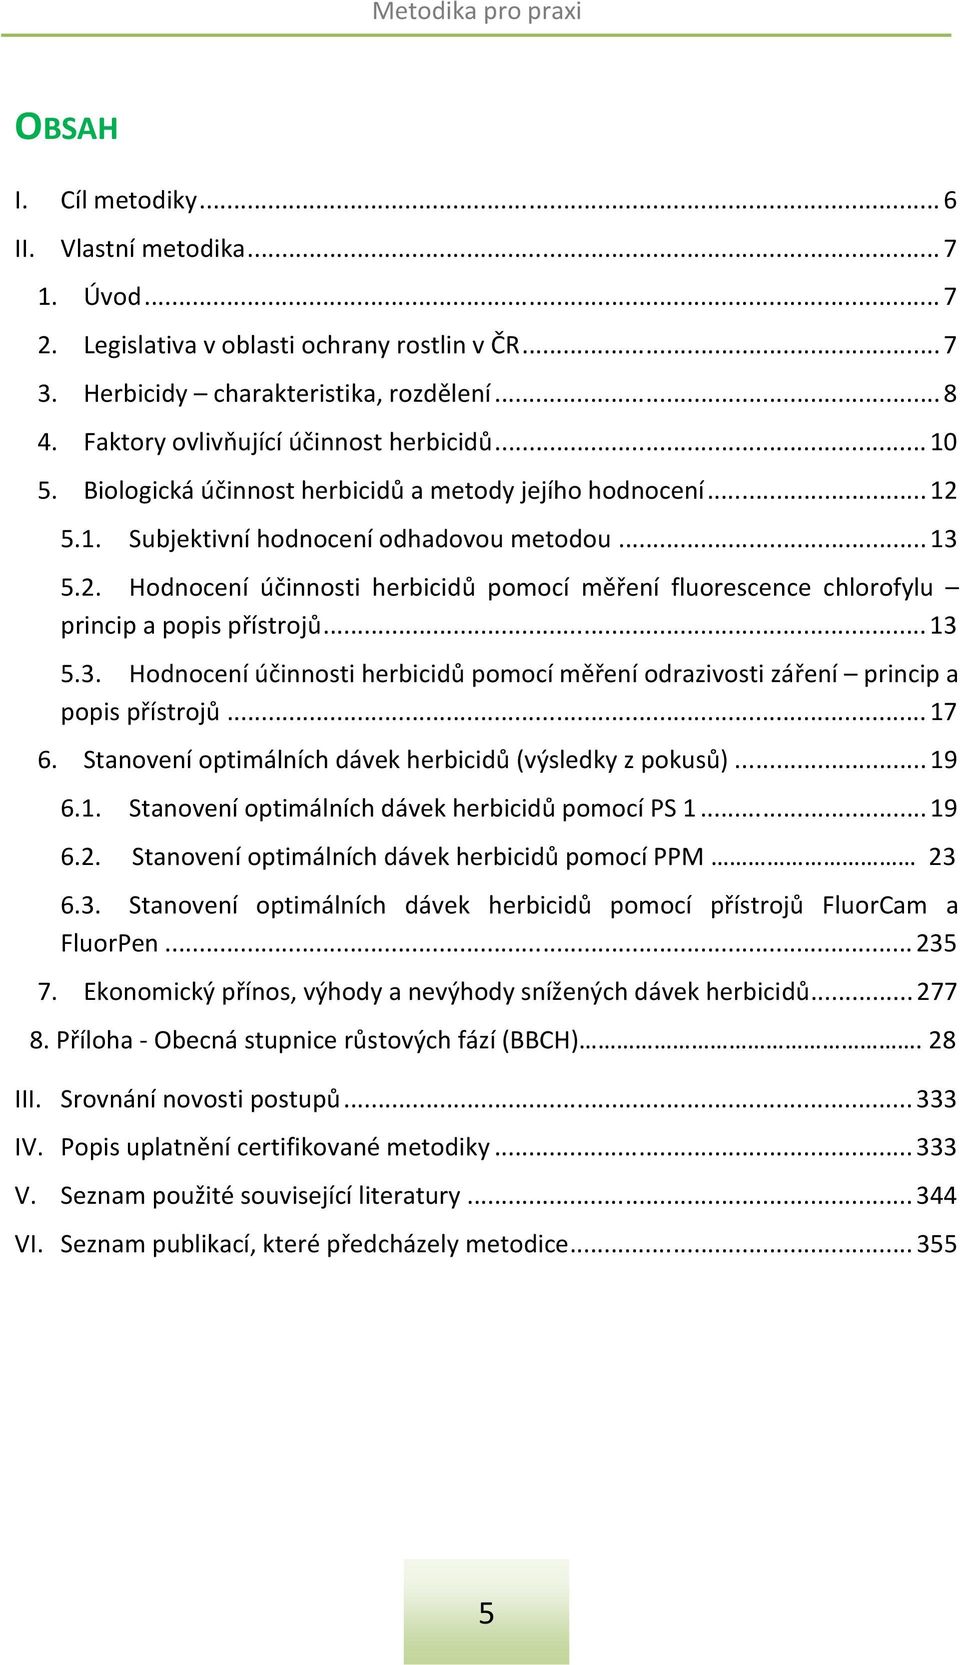 5.1. Subjektivní hodnocení odhadovou metodou... 13 5.2. Hodnocení účinnosti herbicidů pomocí měření fluorescence chlorofylu princip a popis přístrojů... 13 5.3. Hodnocení účinnosti herbicidů pomocí měření odrazivosti záření princip a popis přístrojů.